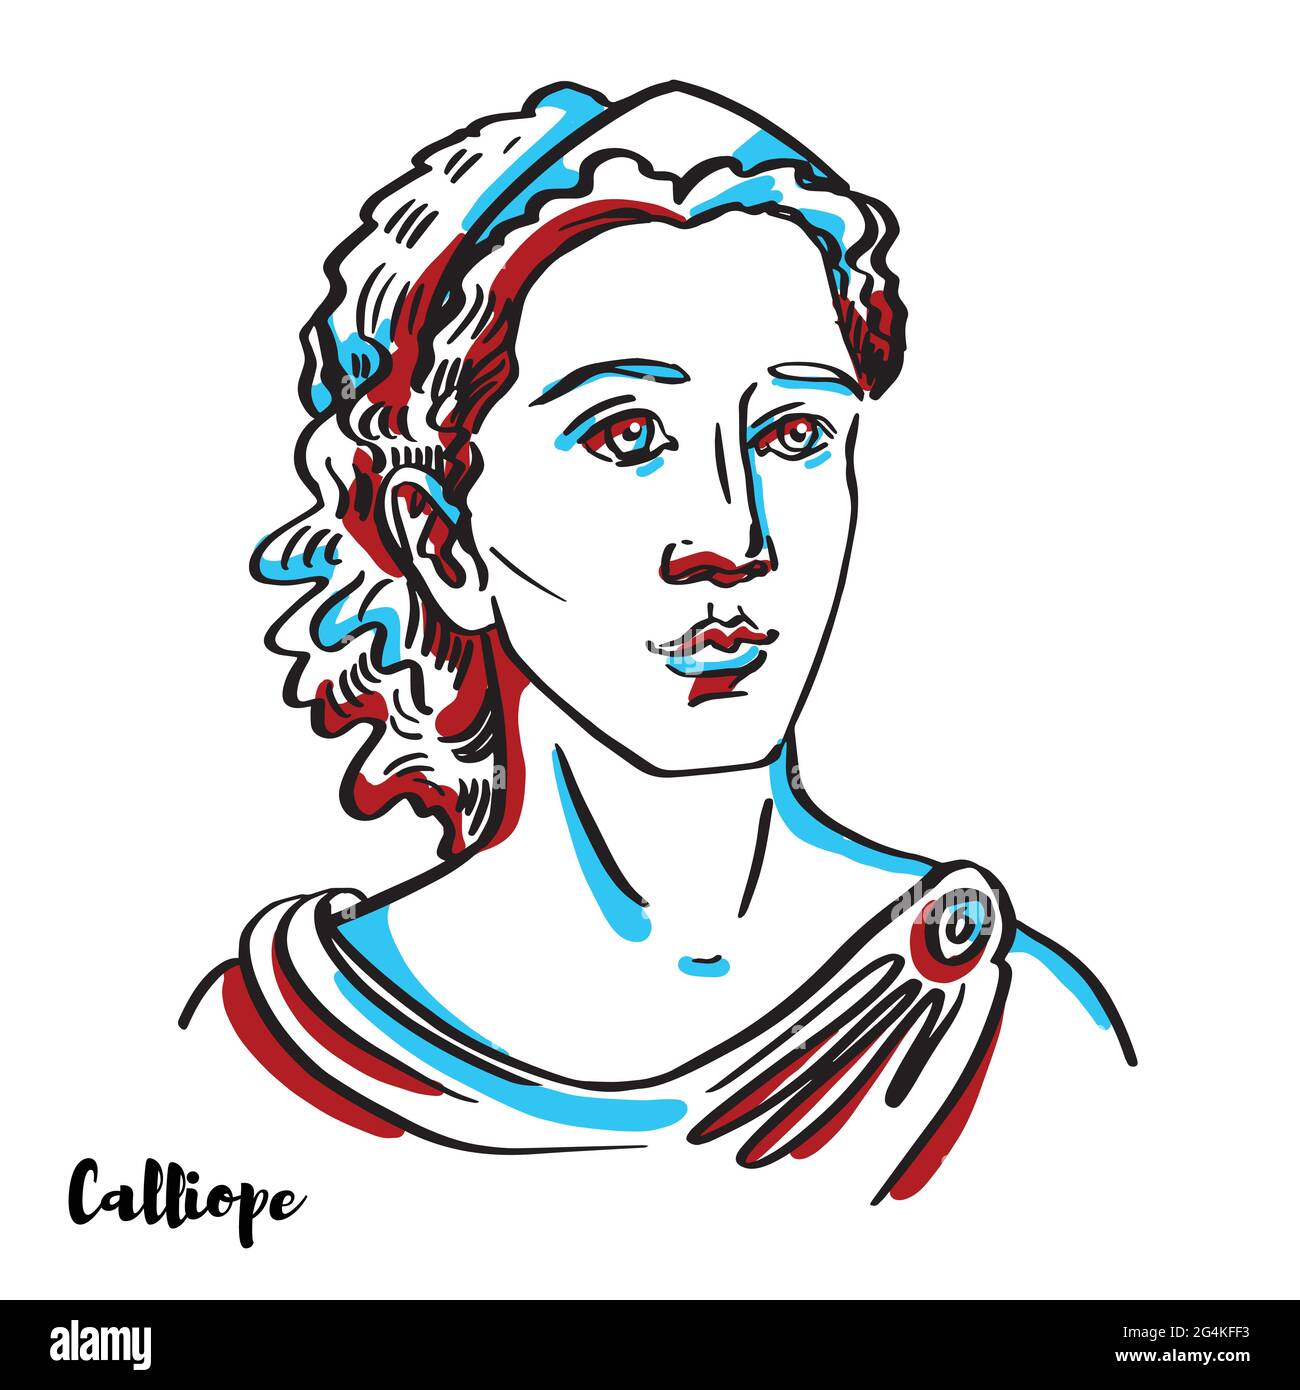 Calliope graviert Vektor-Porträt mit Farbkonturen auf weißem Hintergrund. Calliope ist die Muse, die Eloquenz und epische Poesie vorsteht; so genannte f Stock Vektor